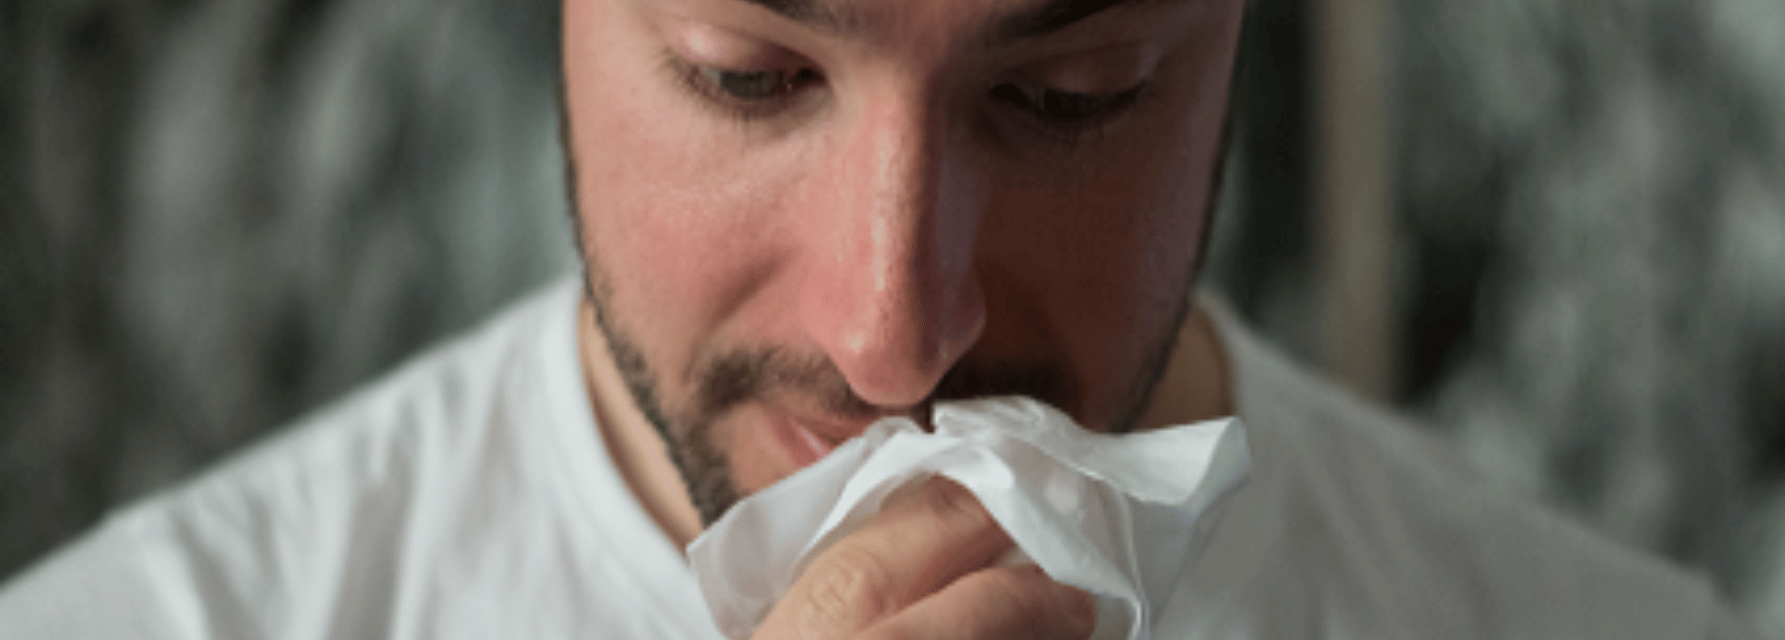 Síntomas de la rinitis alérgica